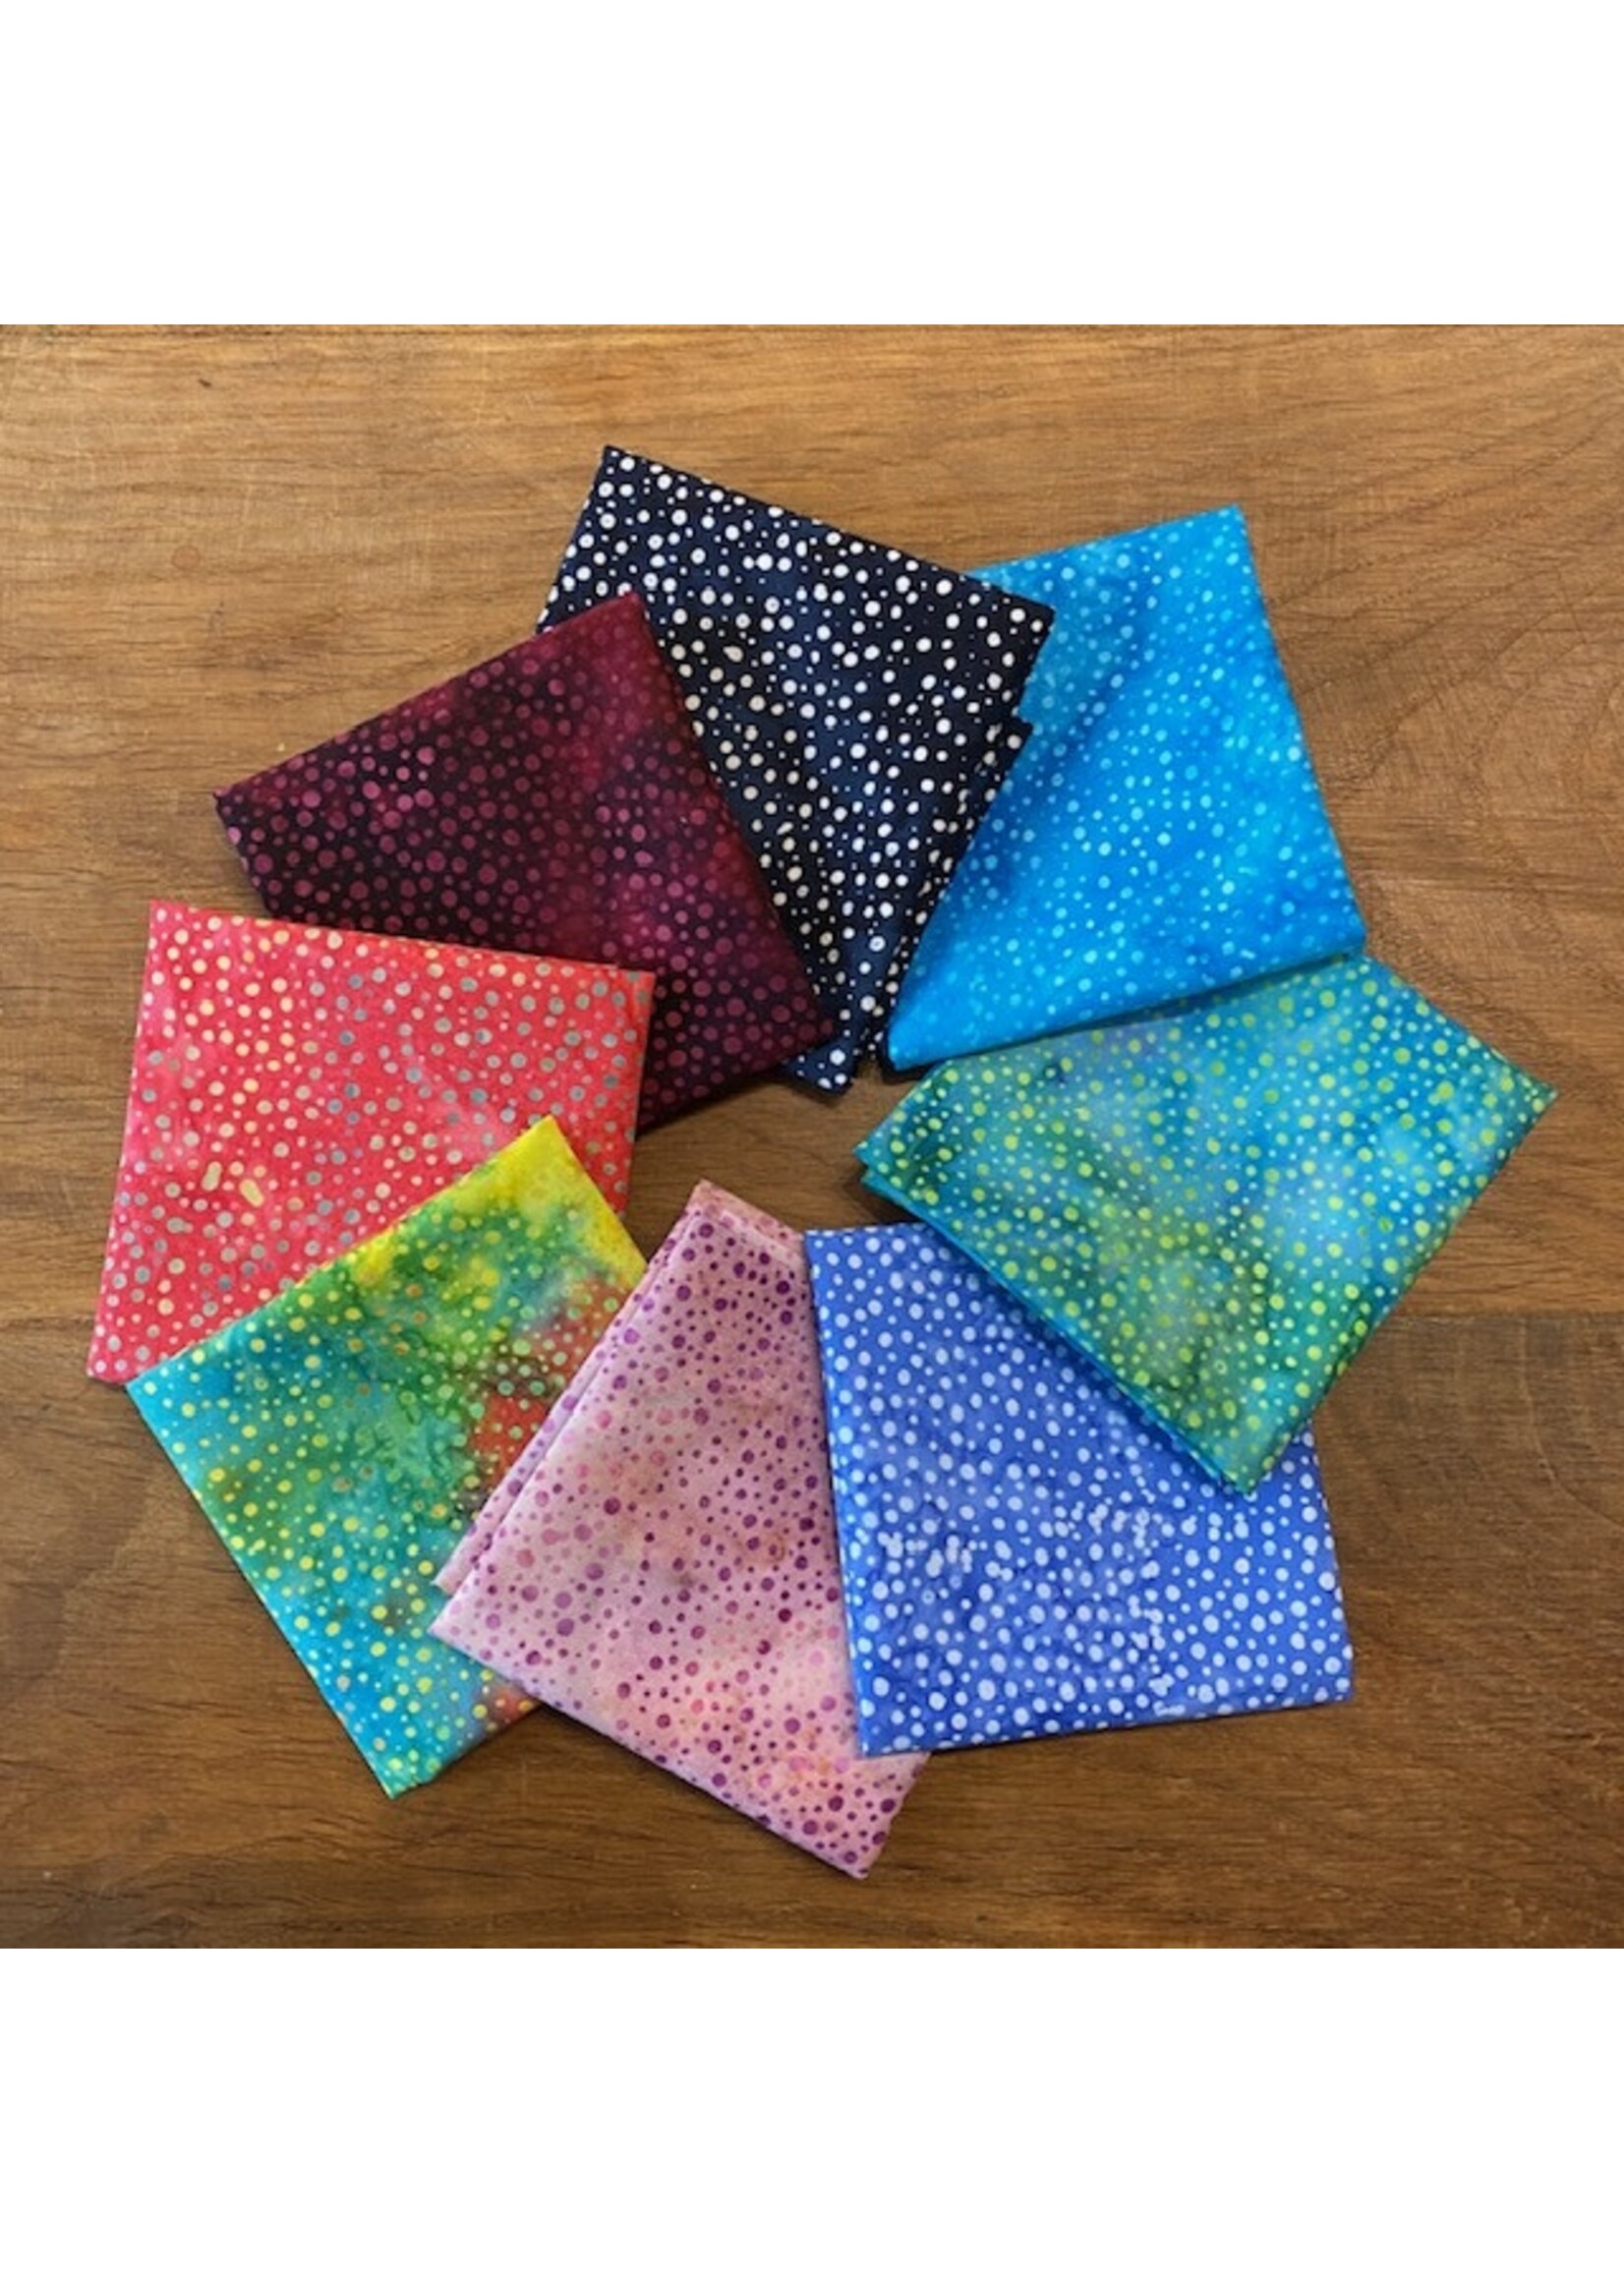 Hoffman Fabrics Stofpakket - Batik dots bright  -  8 Long Eights